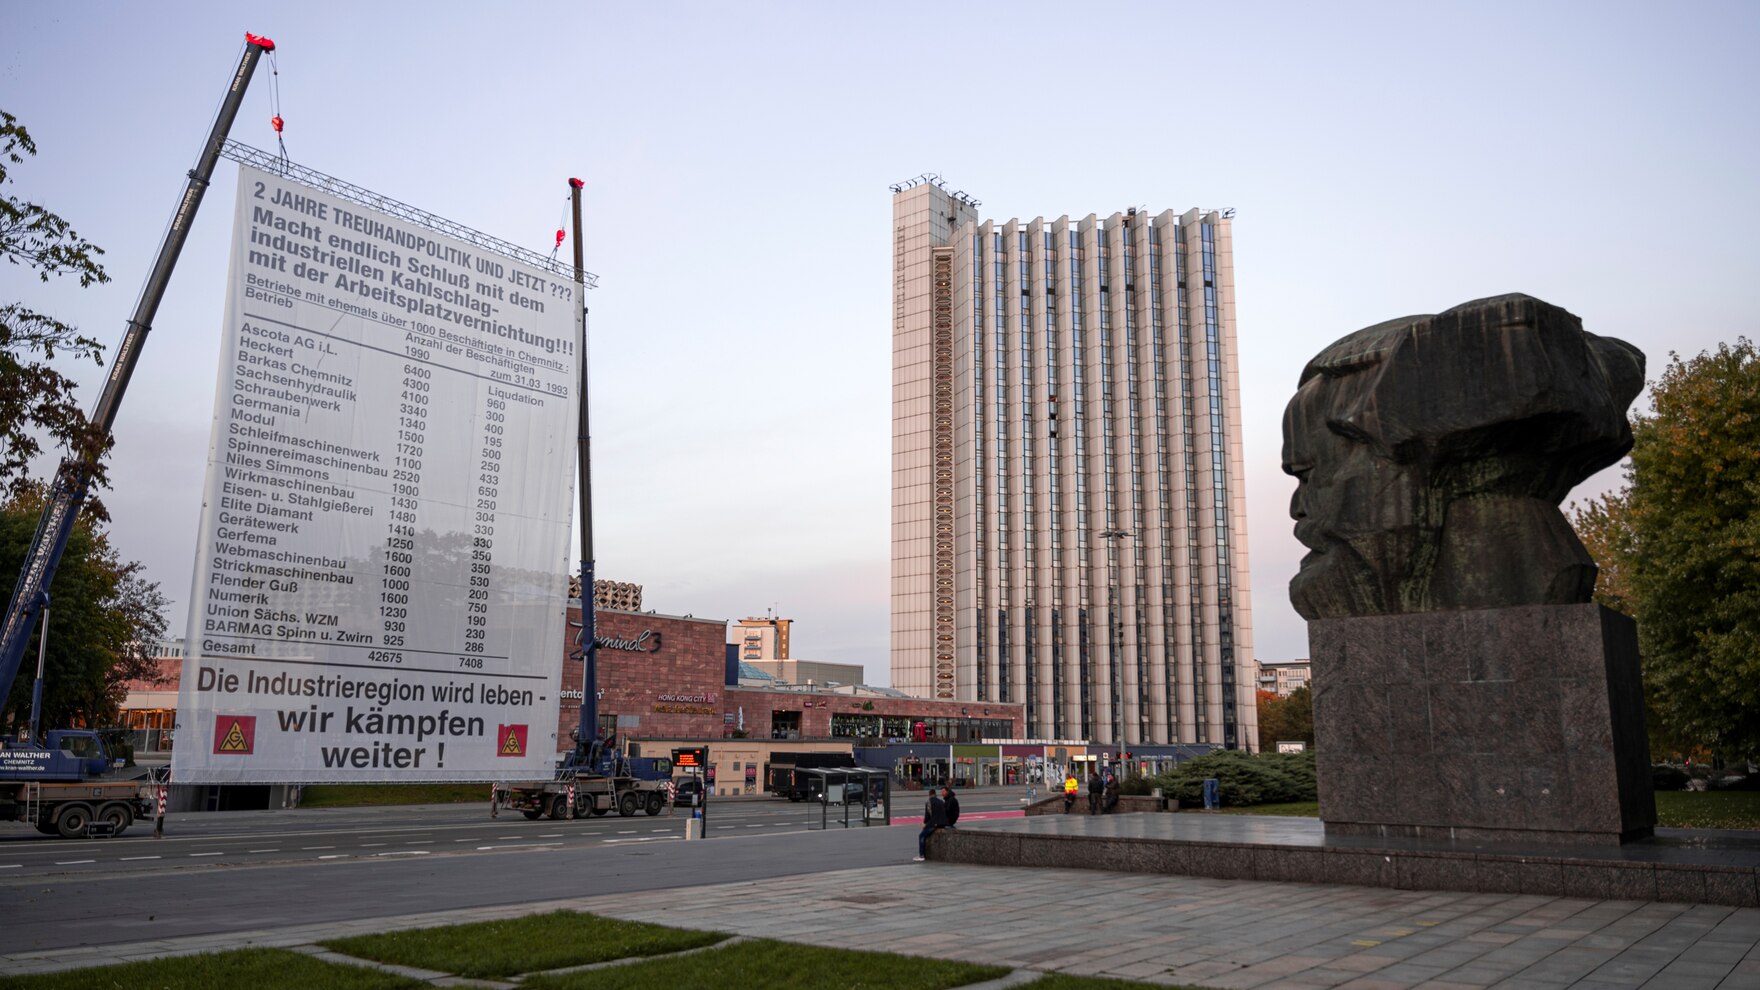 Ein großes Plakat an einem Kran befestigt, befindet sich vor dem Karl Marx Monument in Chemnitz.